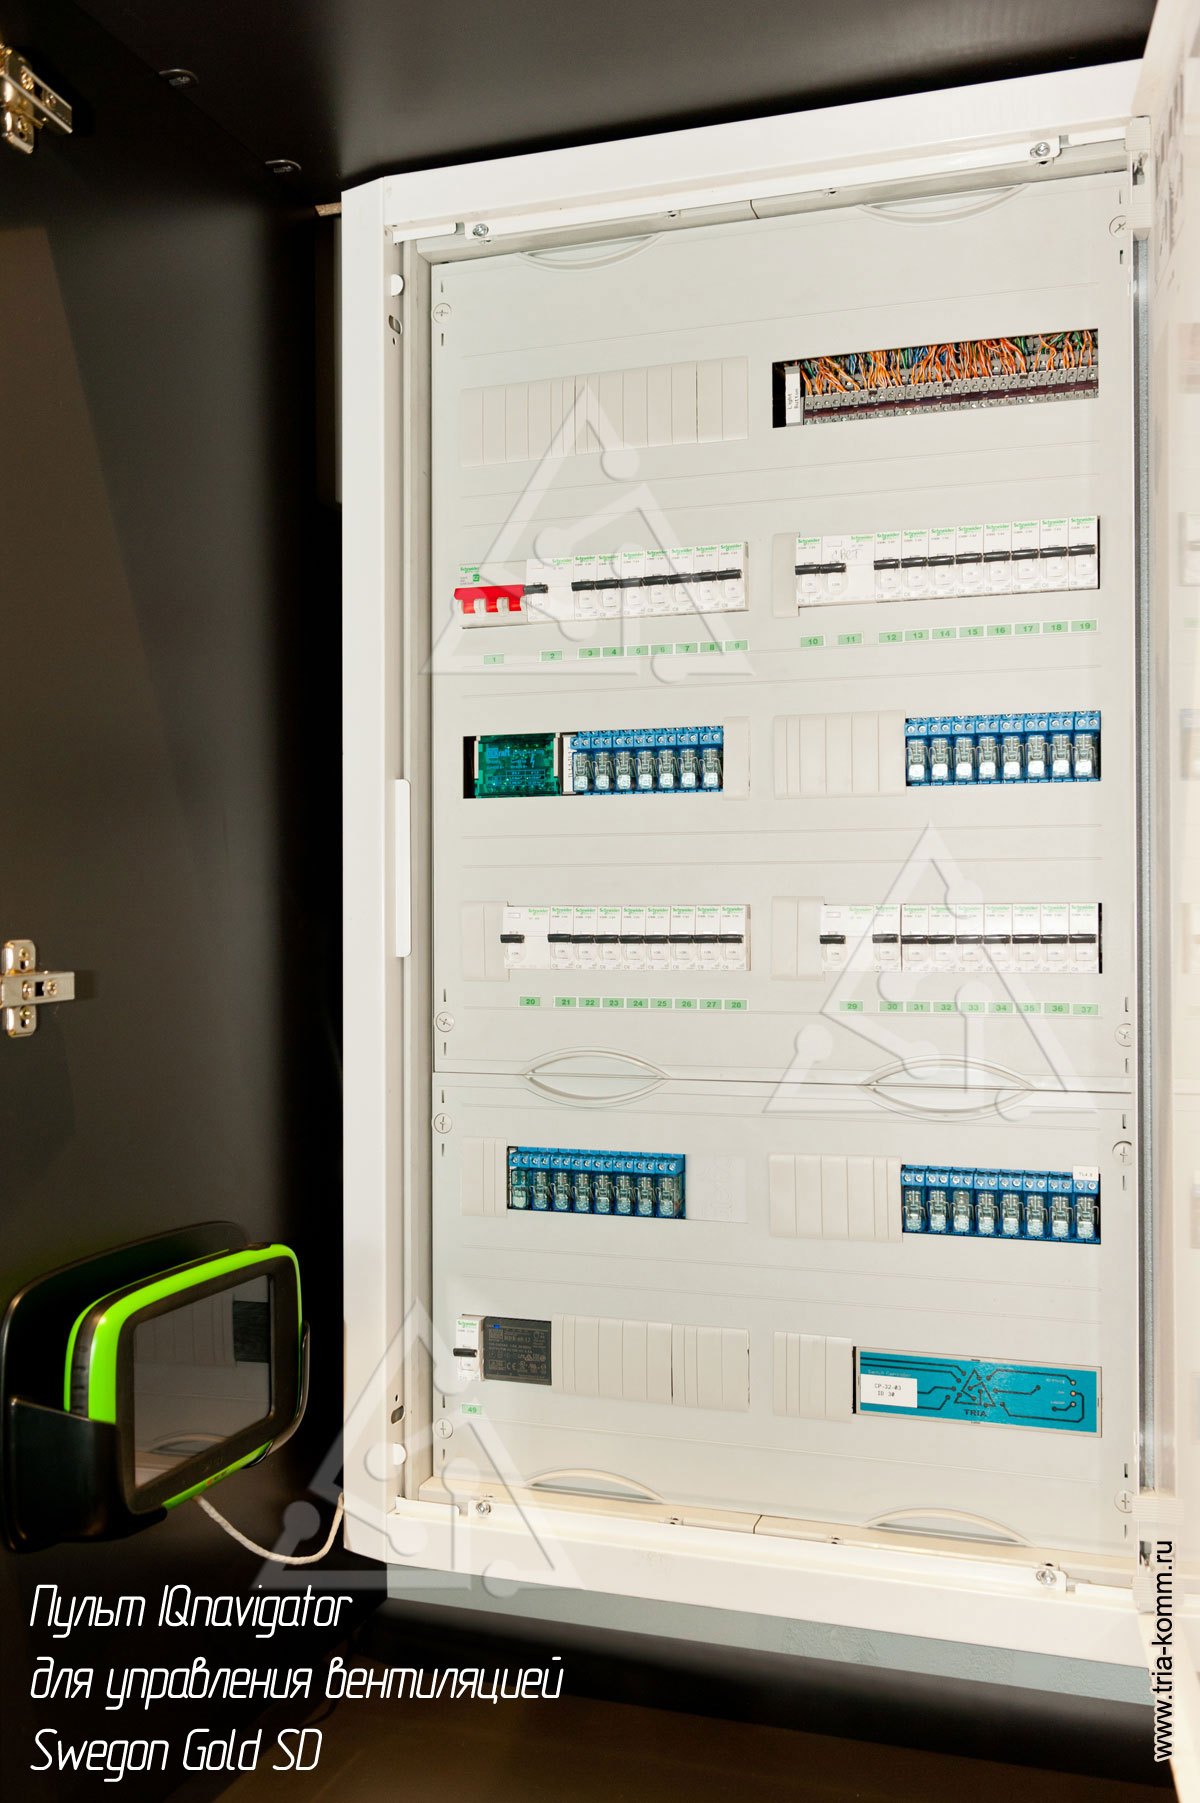 Фото электрического щита освещения (ЩО-1) с автоматикой управления освещением и вентиляцией в квартире